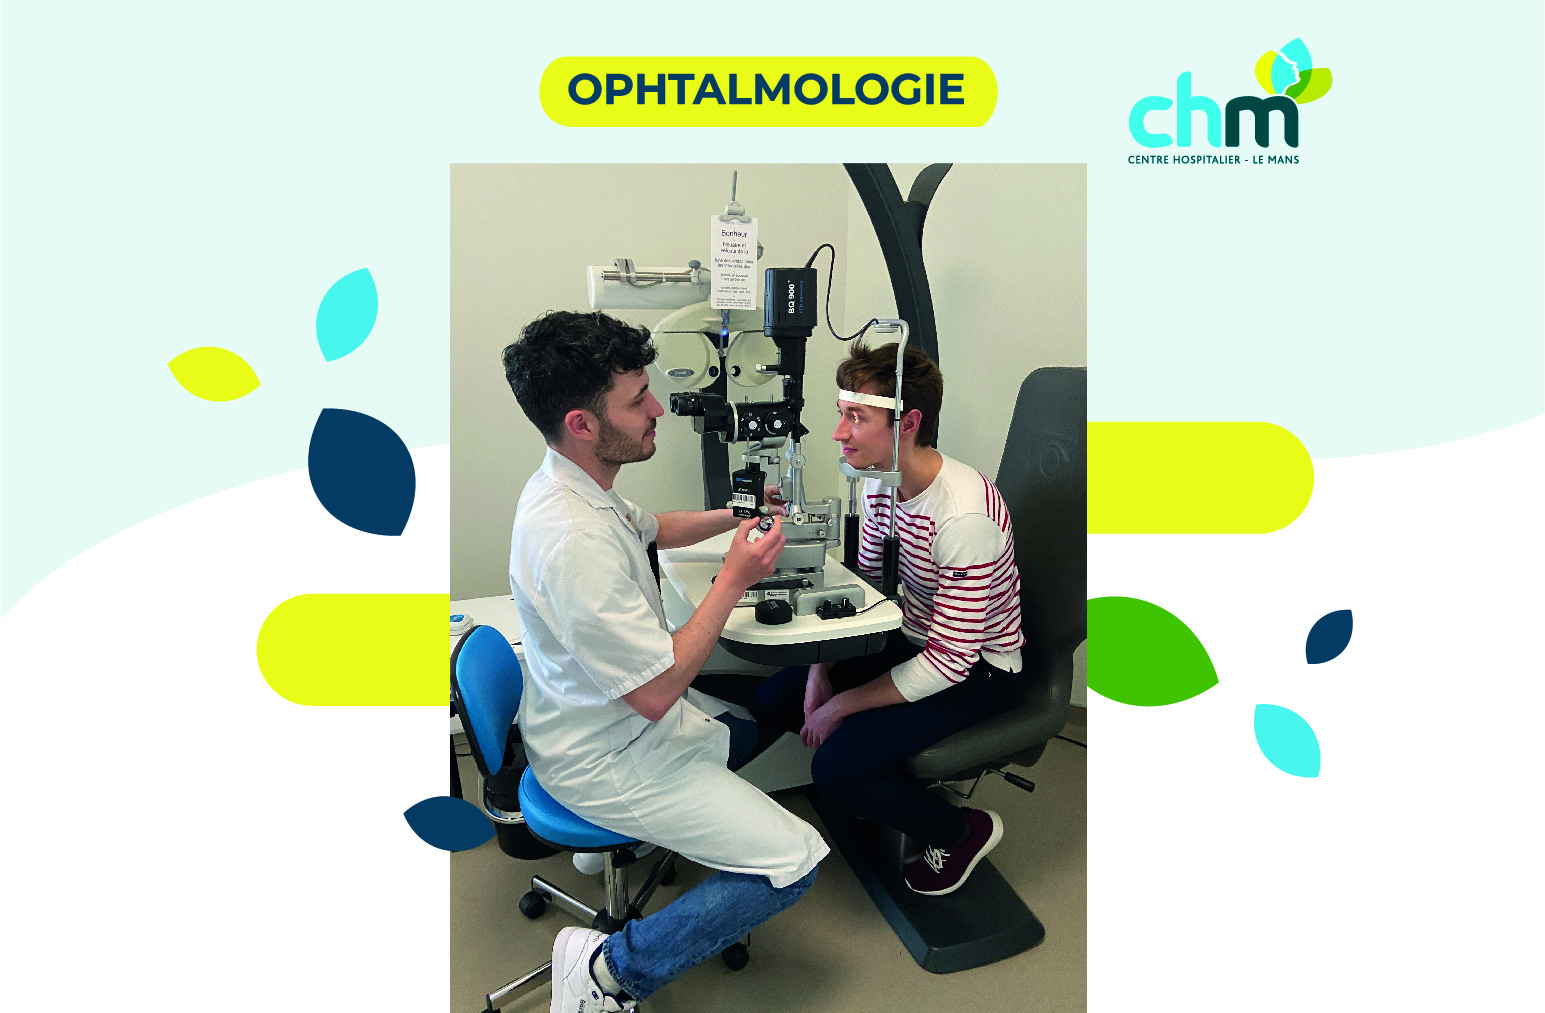 Ophtalmologie : un service renforcé de qualité